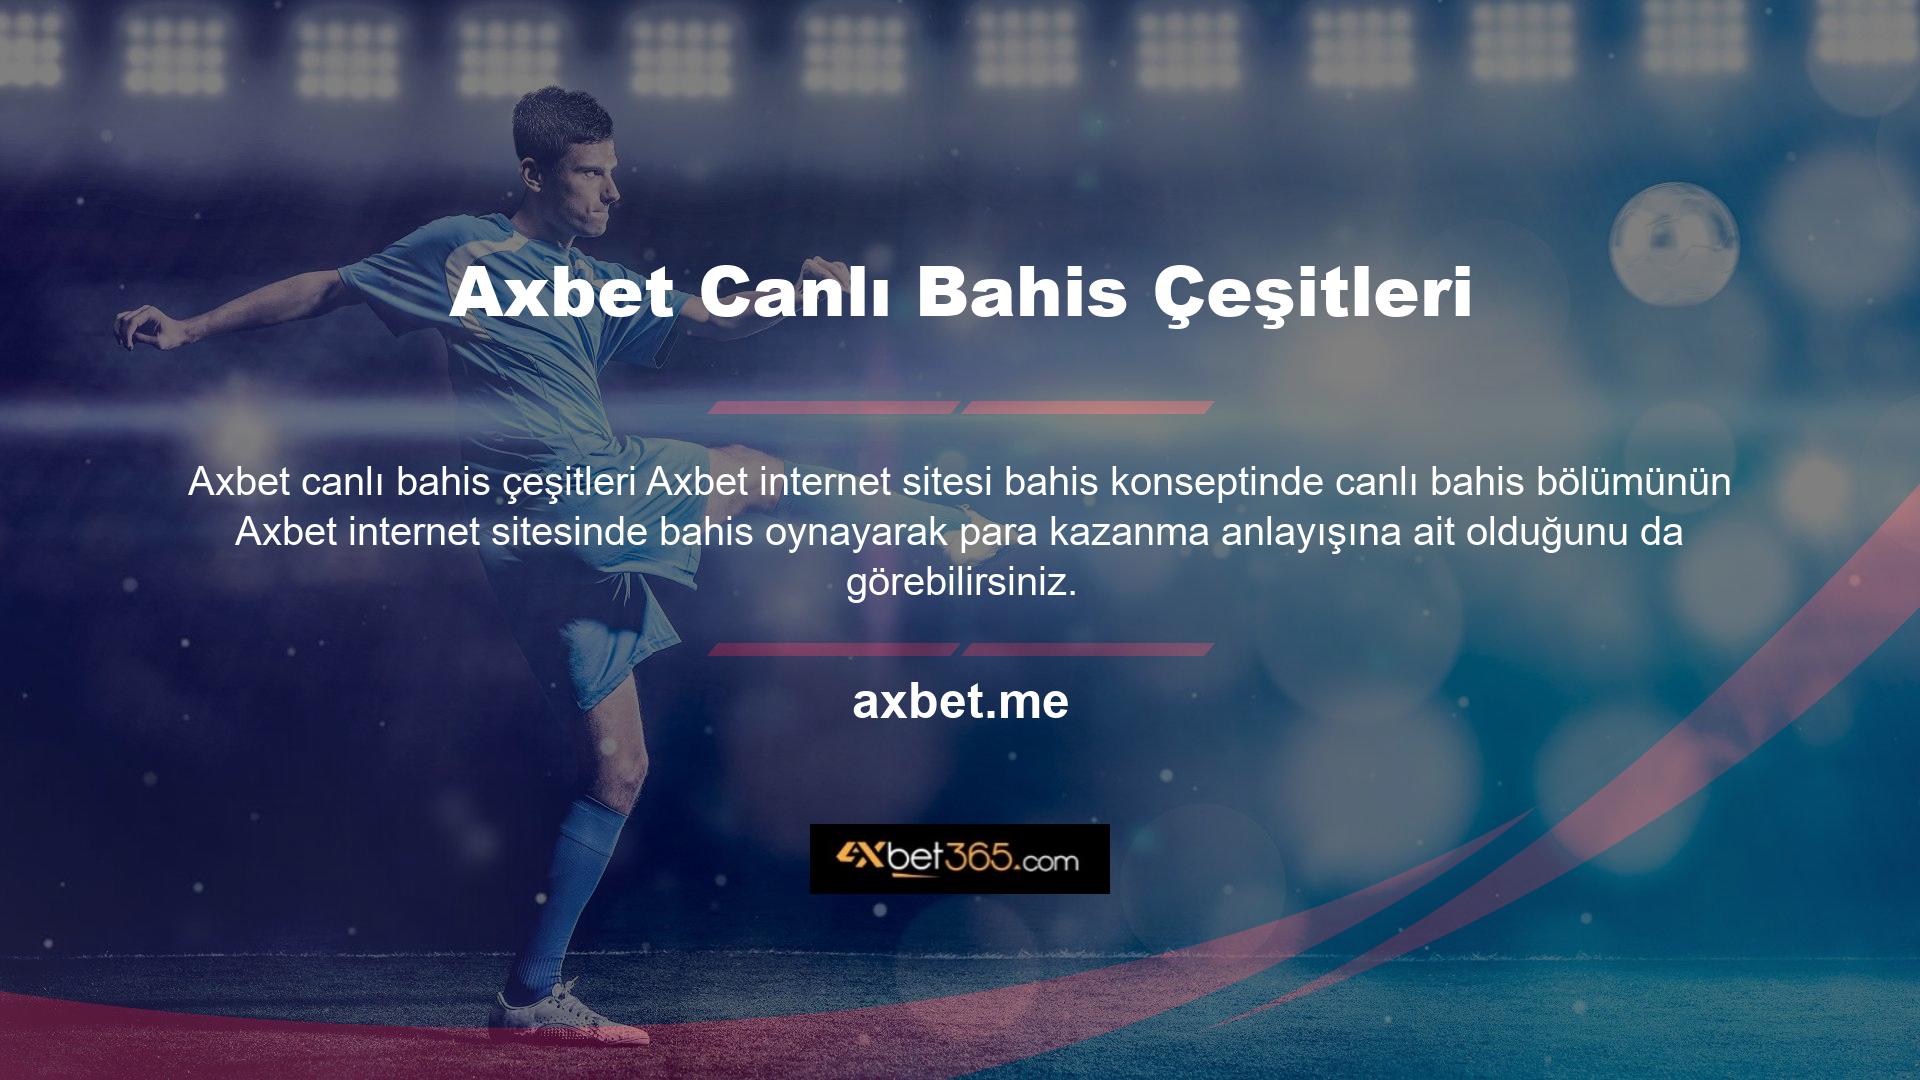 Axbet, Türkiye pazarındaki en dinamik web sitelerinden biridir